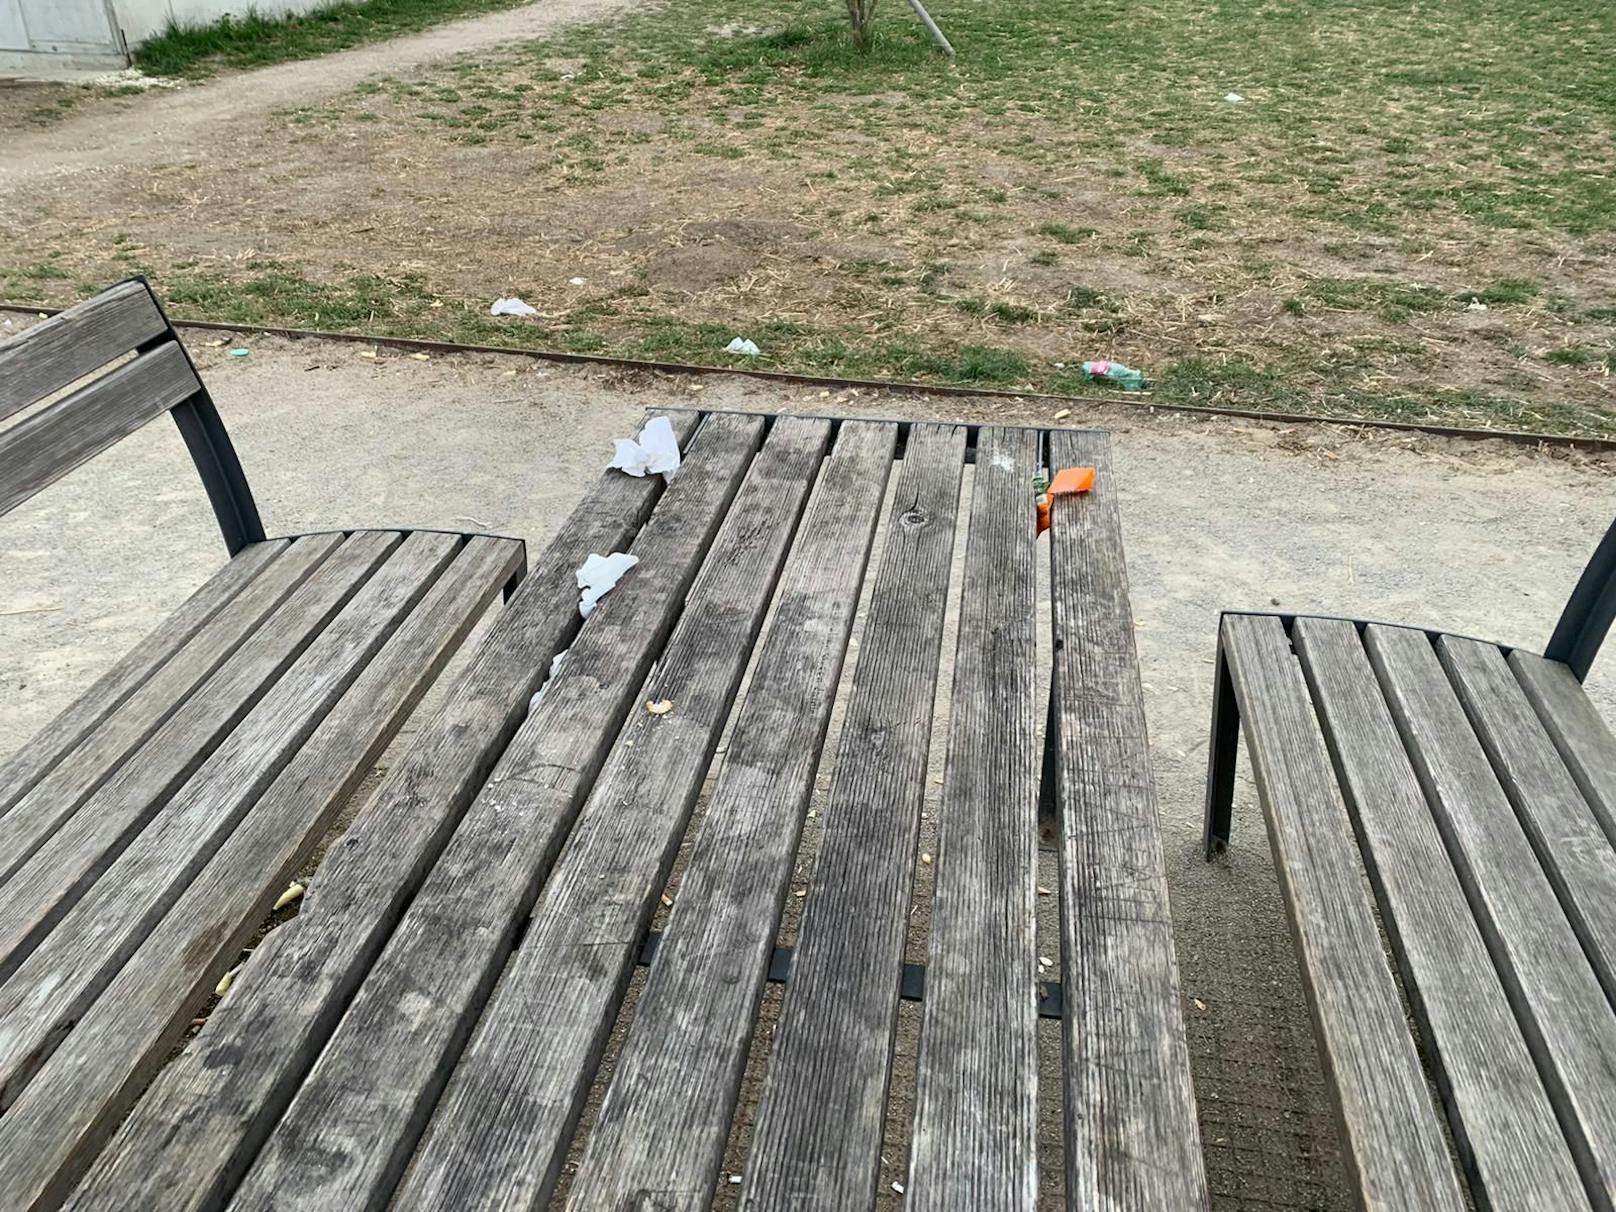 Christoph (35) machte die Fotos am Montagmorgen während eines Spaziergangs mit seinem Hund. 